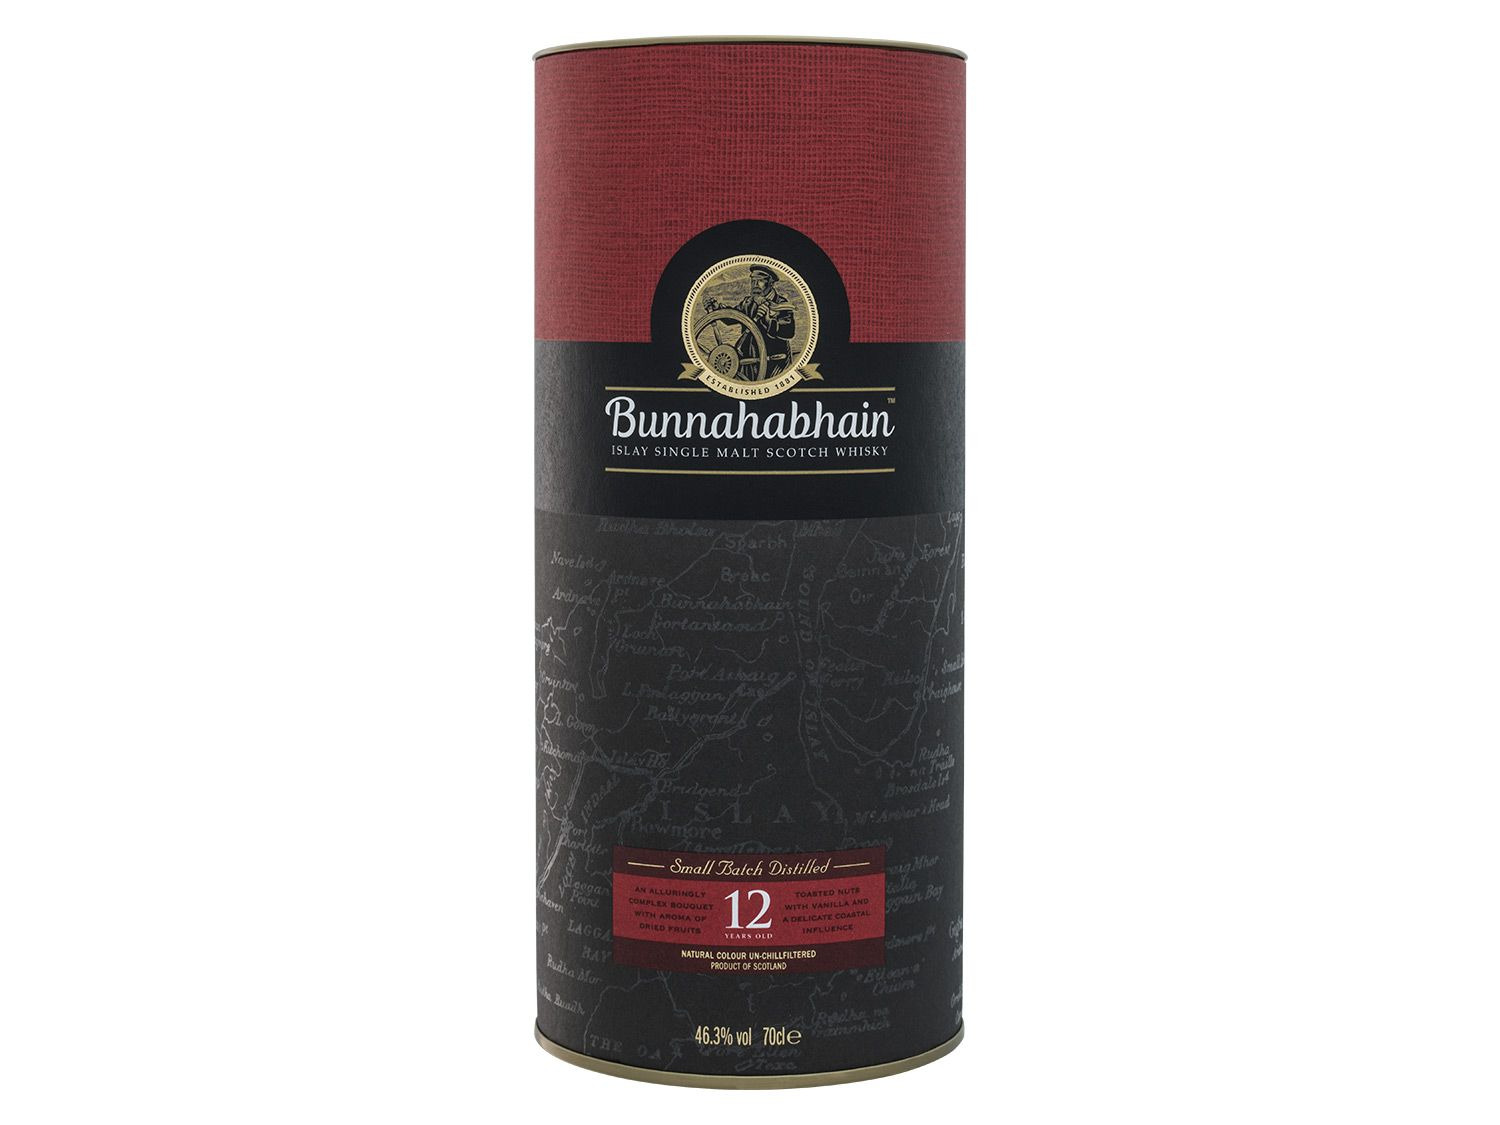 Whisky Islay Single Scotch Malt Jahre … 12 Bunnahabhain